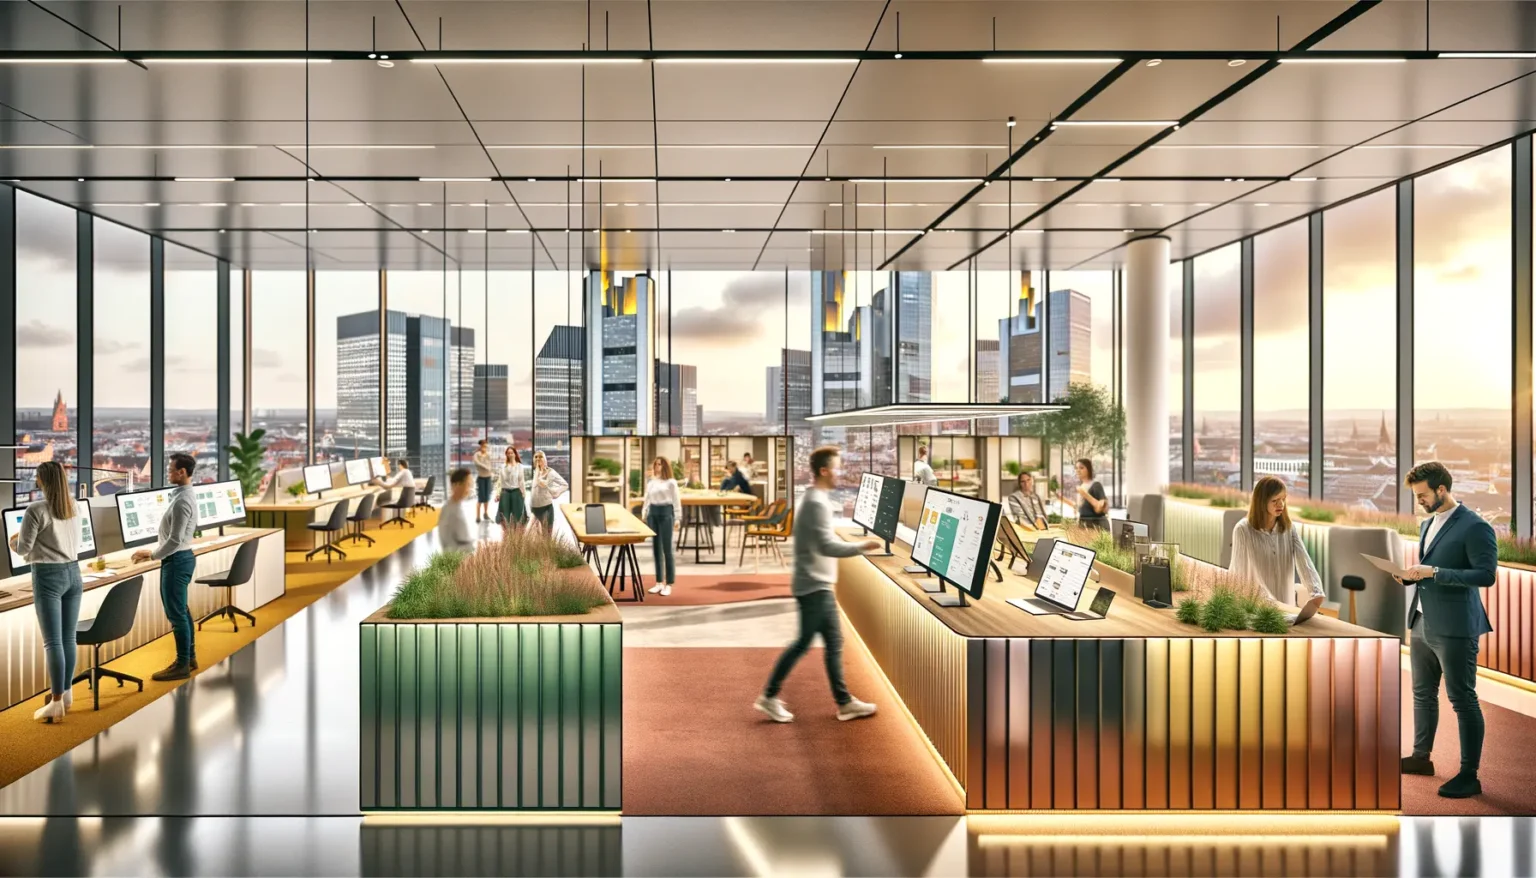 Moderner Büroinnenraum mit Panoramafenstern, durch die eine Stadtsilhouette bei Sonnenuntergang zu sehen ist. Menschen arbeiten an Computern, stehen im Gespräch und bewegen sich durch den Raum. Das Design ist offen und hell, mit Pflanzen und stilvollen Möbeln.